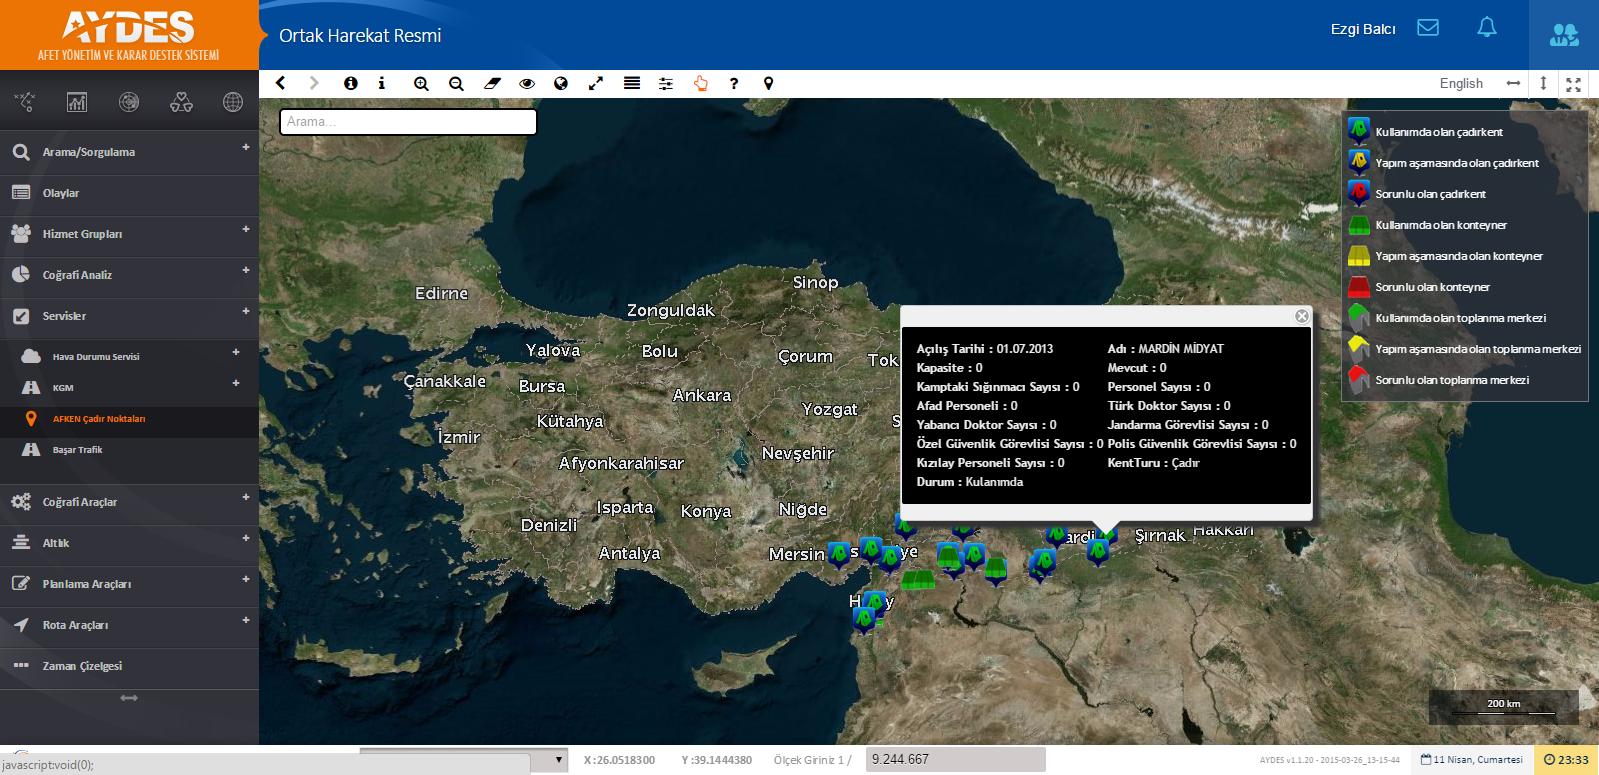 Harita ekranında AFKEN Çadır Noktaları servisinin görüntülenmesi için: 7.4 Başar Trafik Resim 76: AFKEN Çadır Noktaları Başar trafik verilerinin görüntülenmesini sağlar.